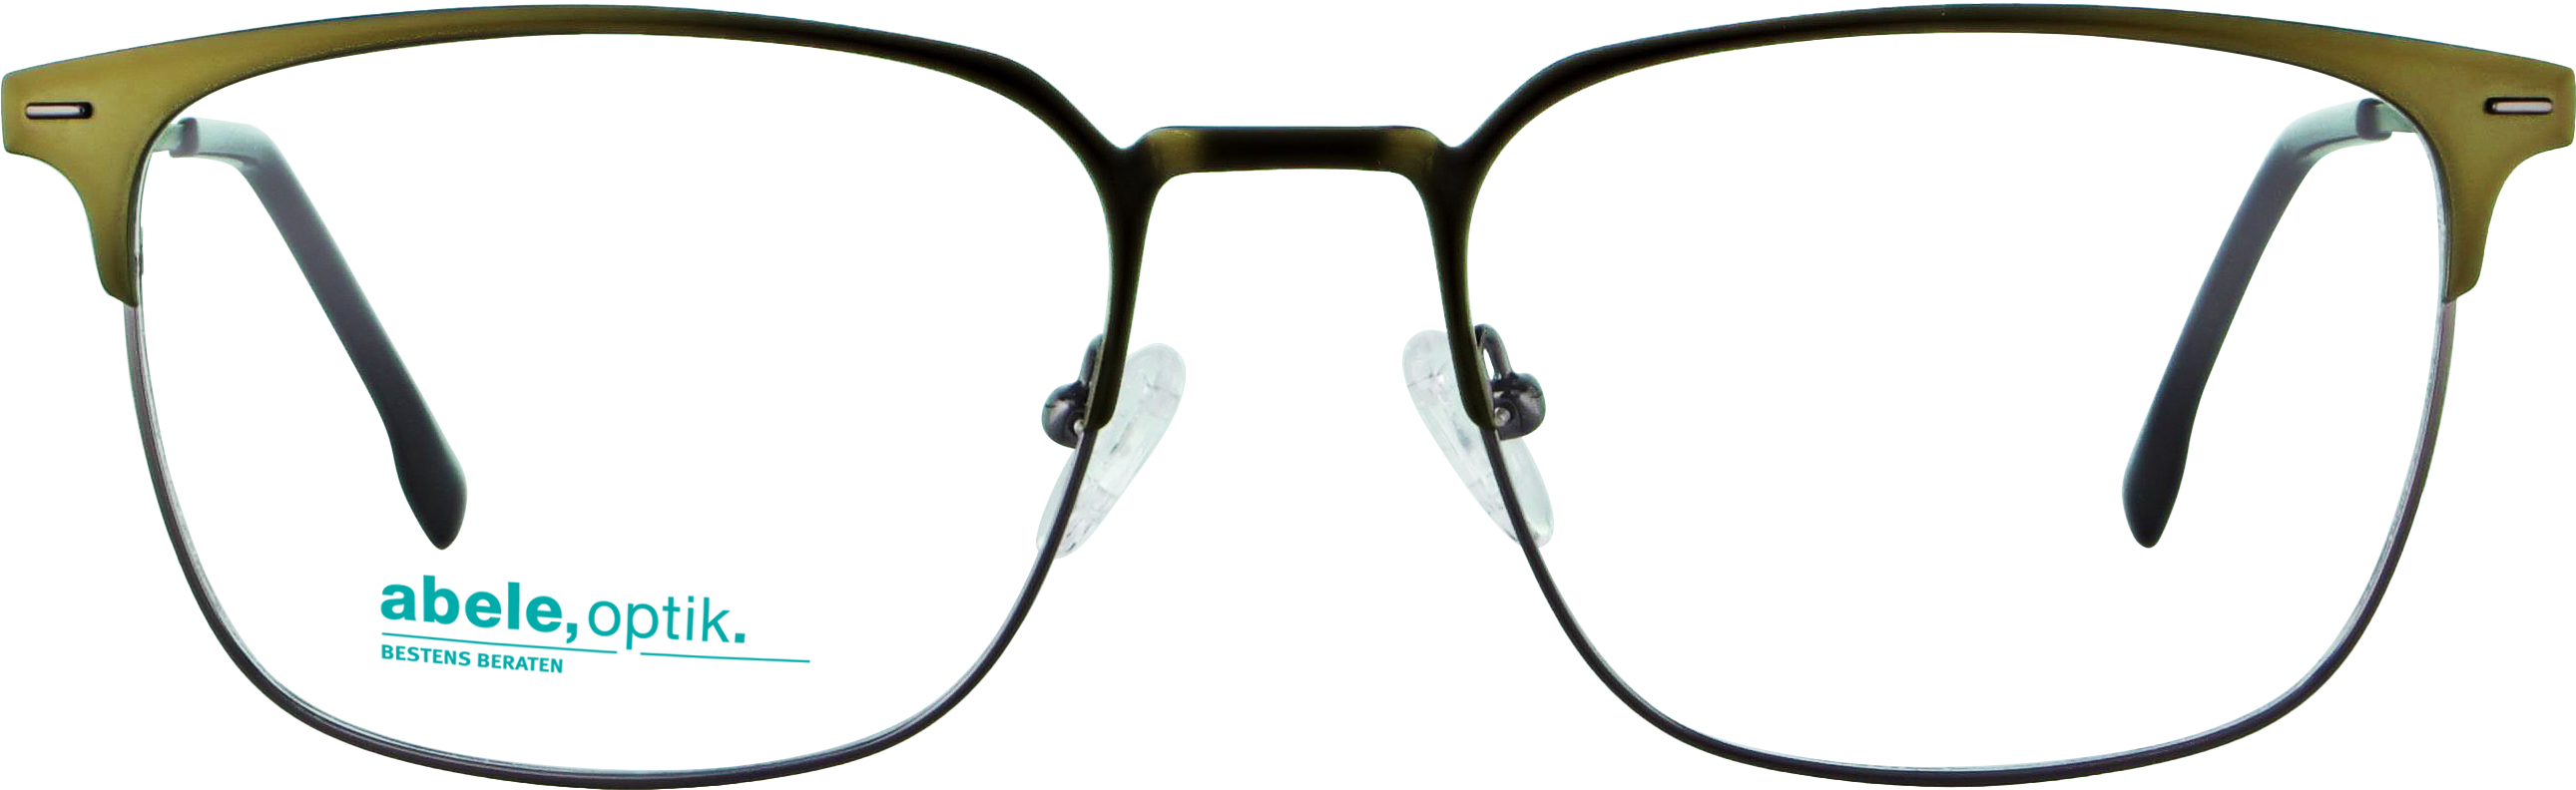 Das Bild zeigt die Korrektionsbrille 143801 von Abele Optik in khaki.